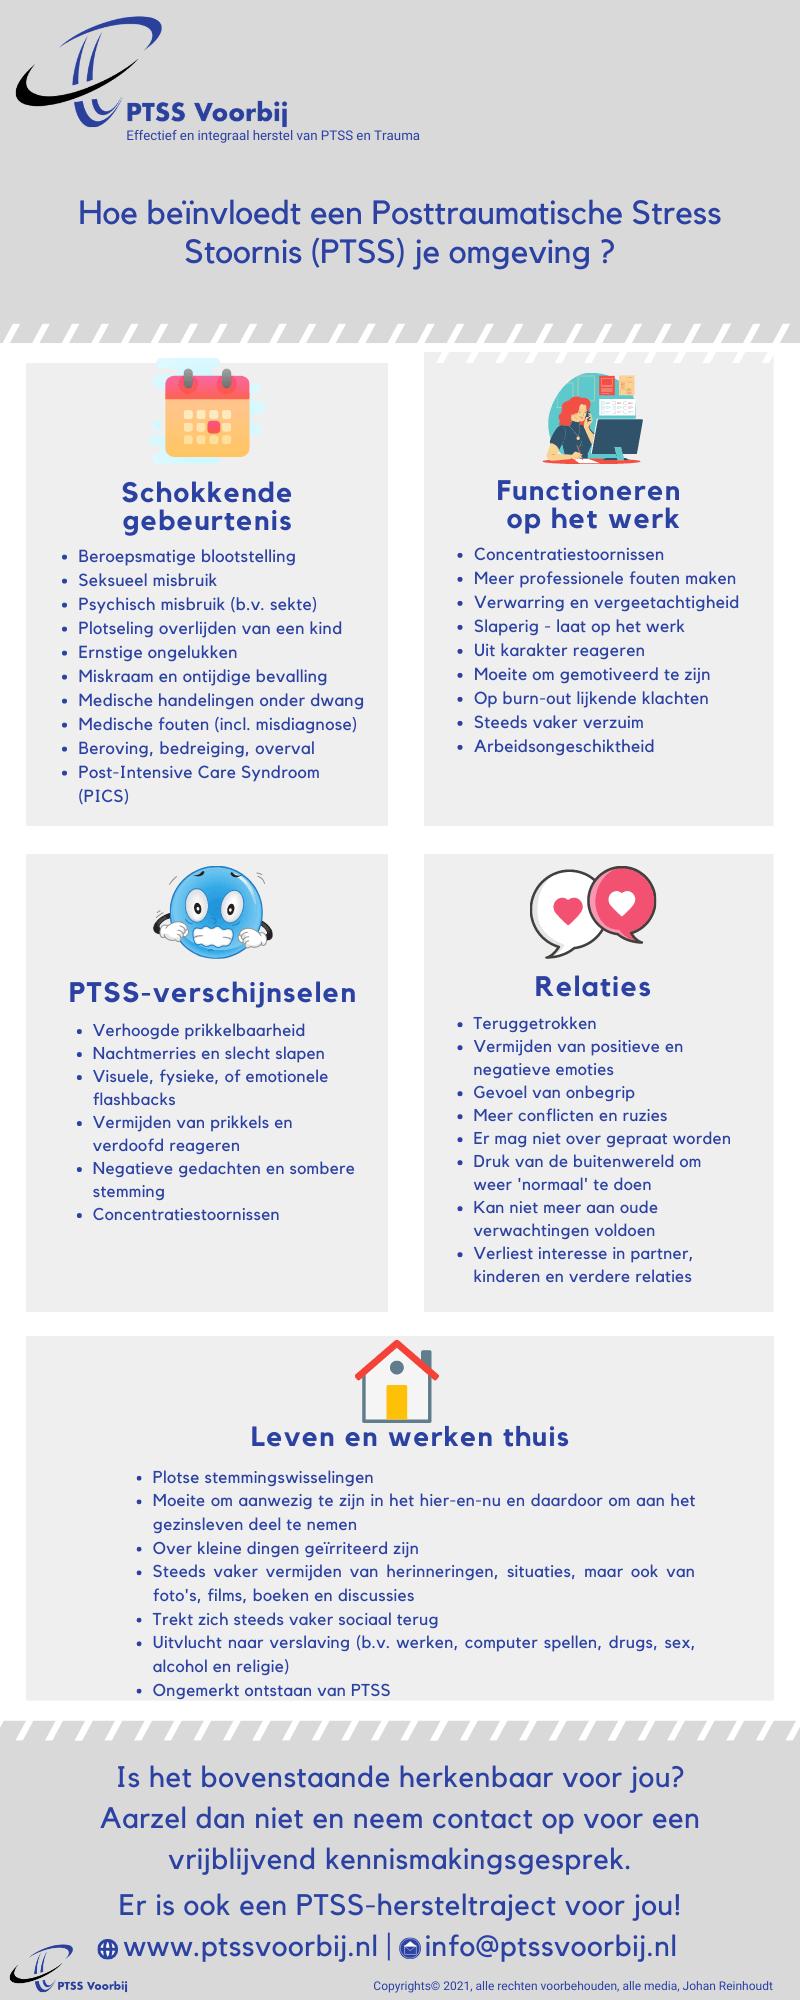 PTSS Voorbij | Hoe beïnvloedt een Posttraumatische Stress Stoornis (PTSS) je omgeving?-Infographic